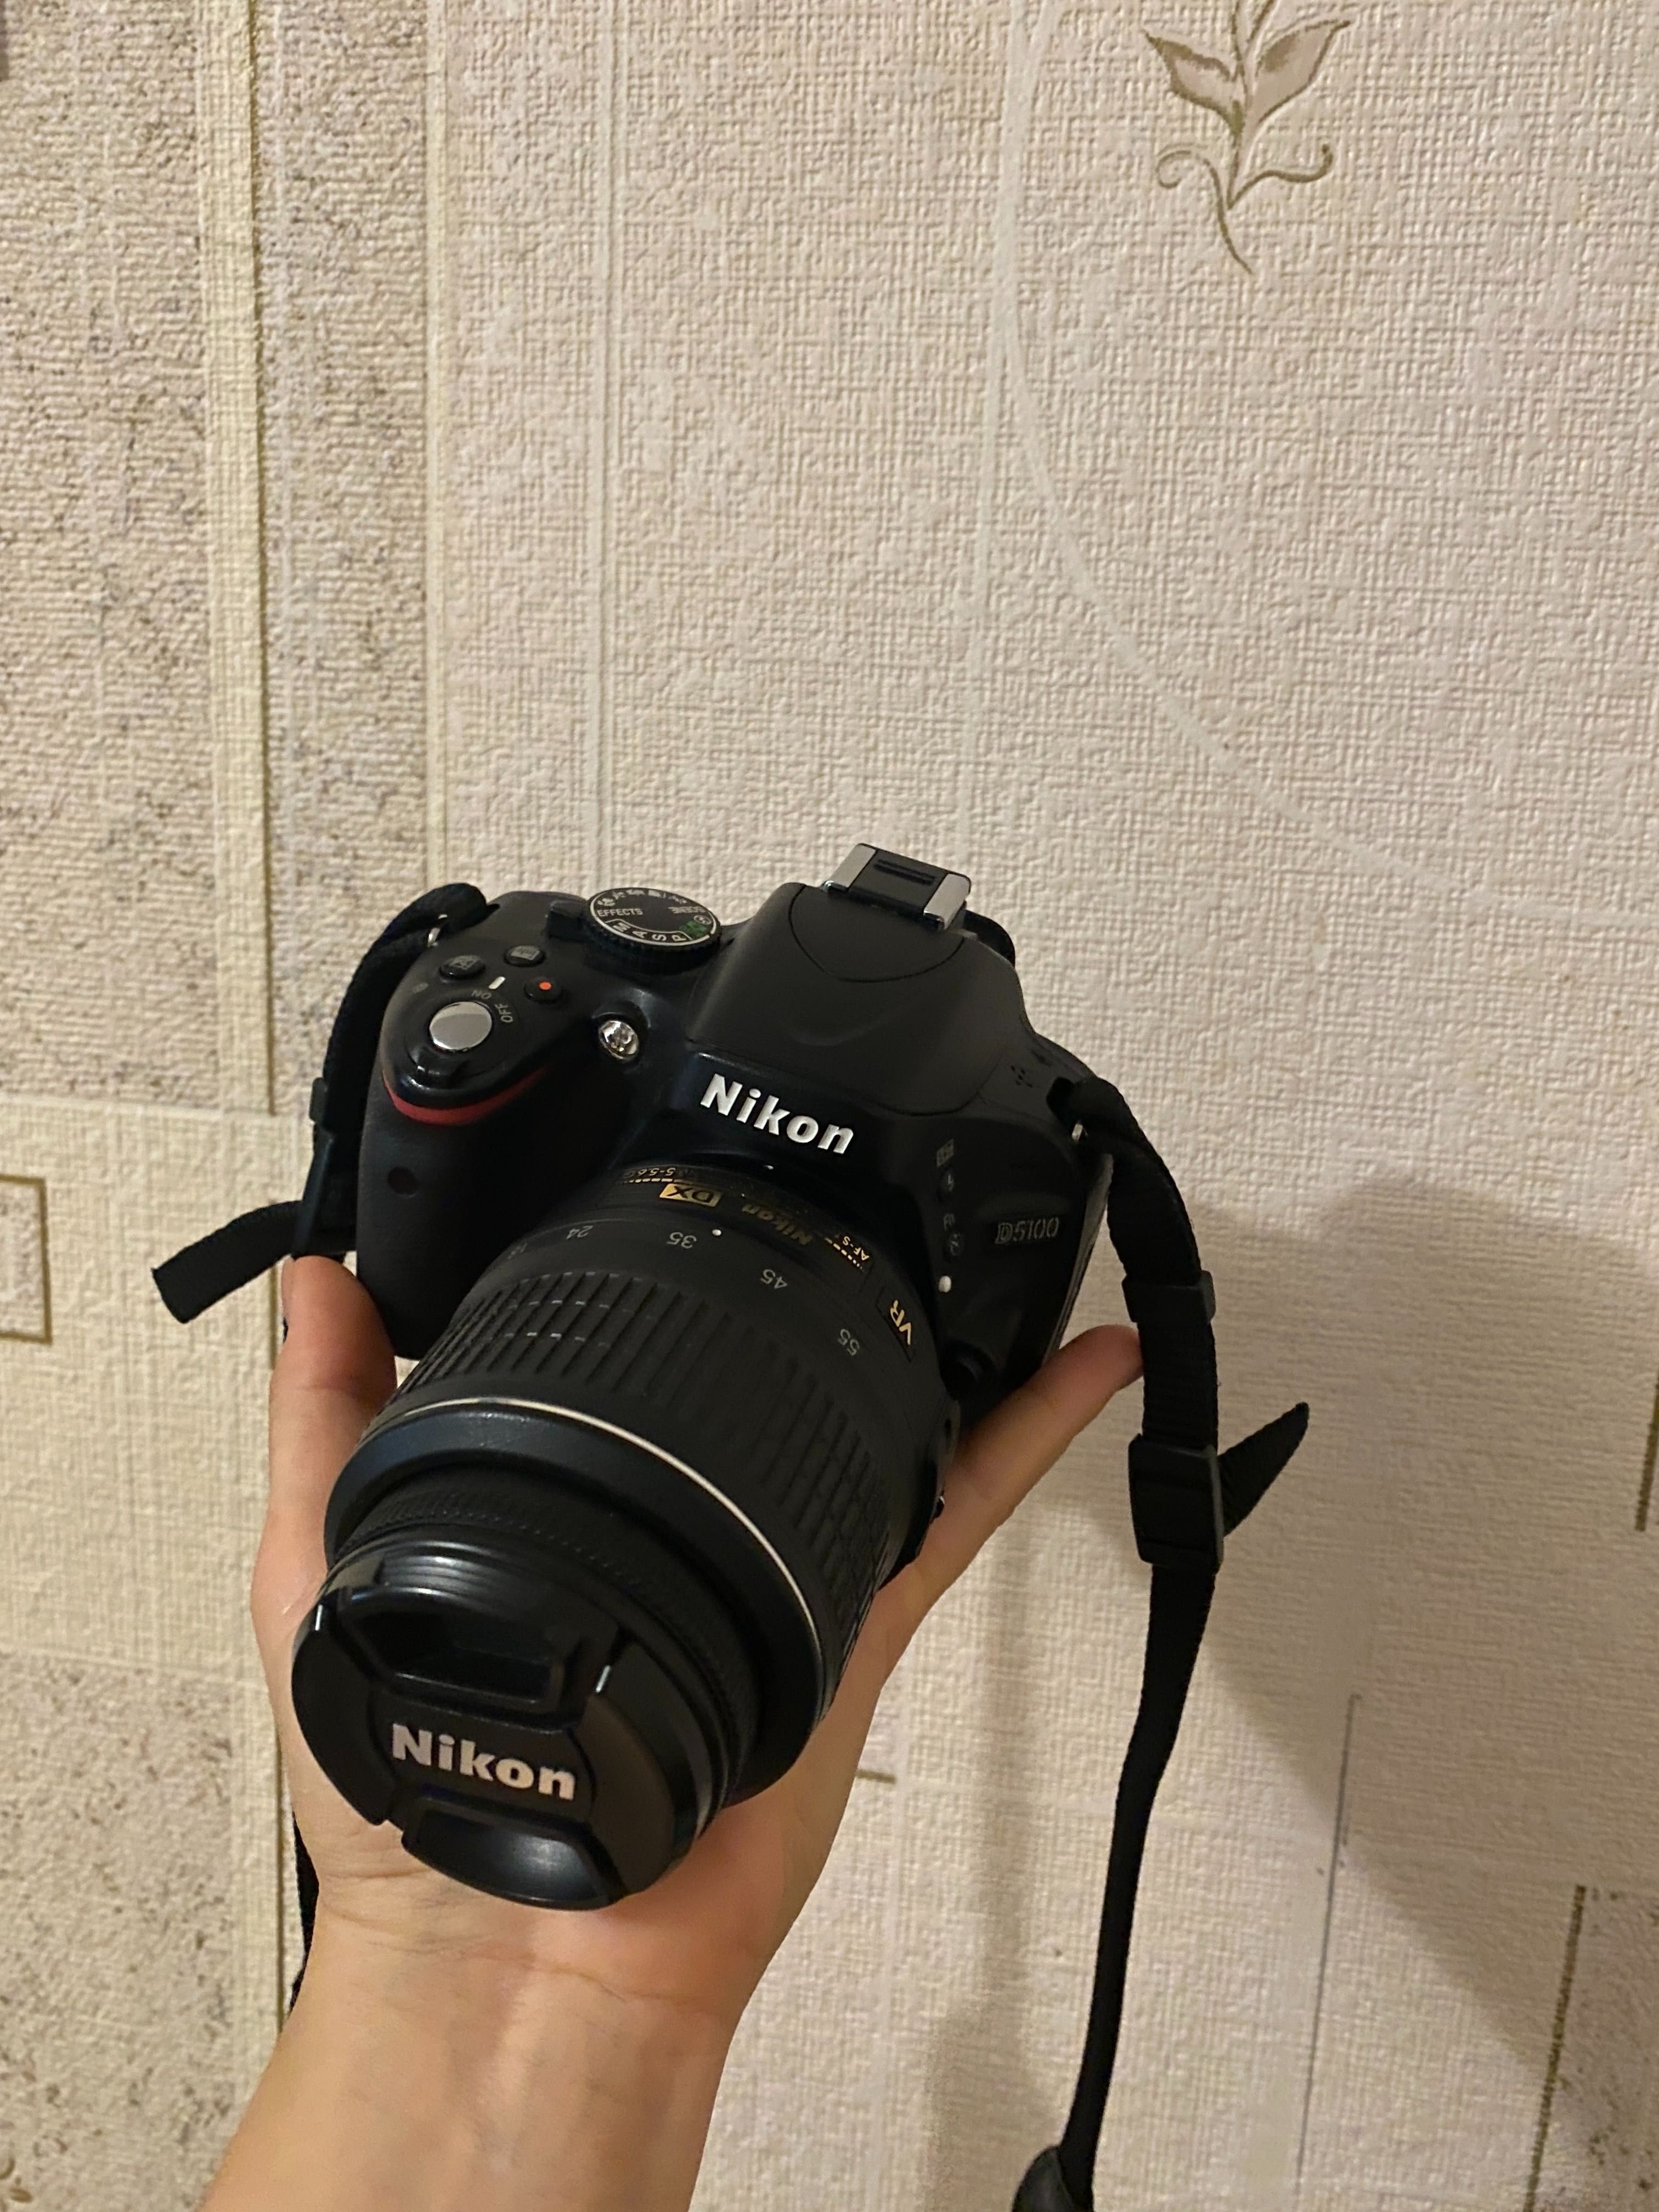 Nikon d5100 (18-55mm)